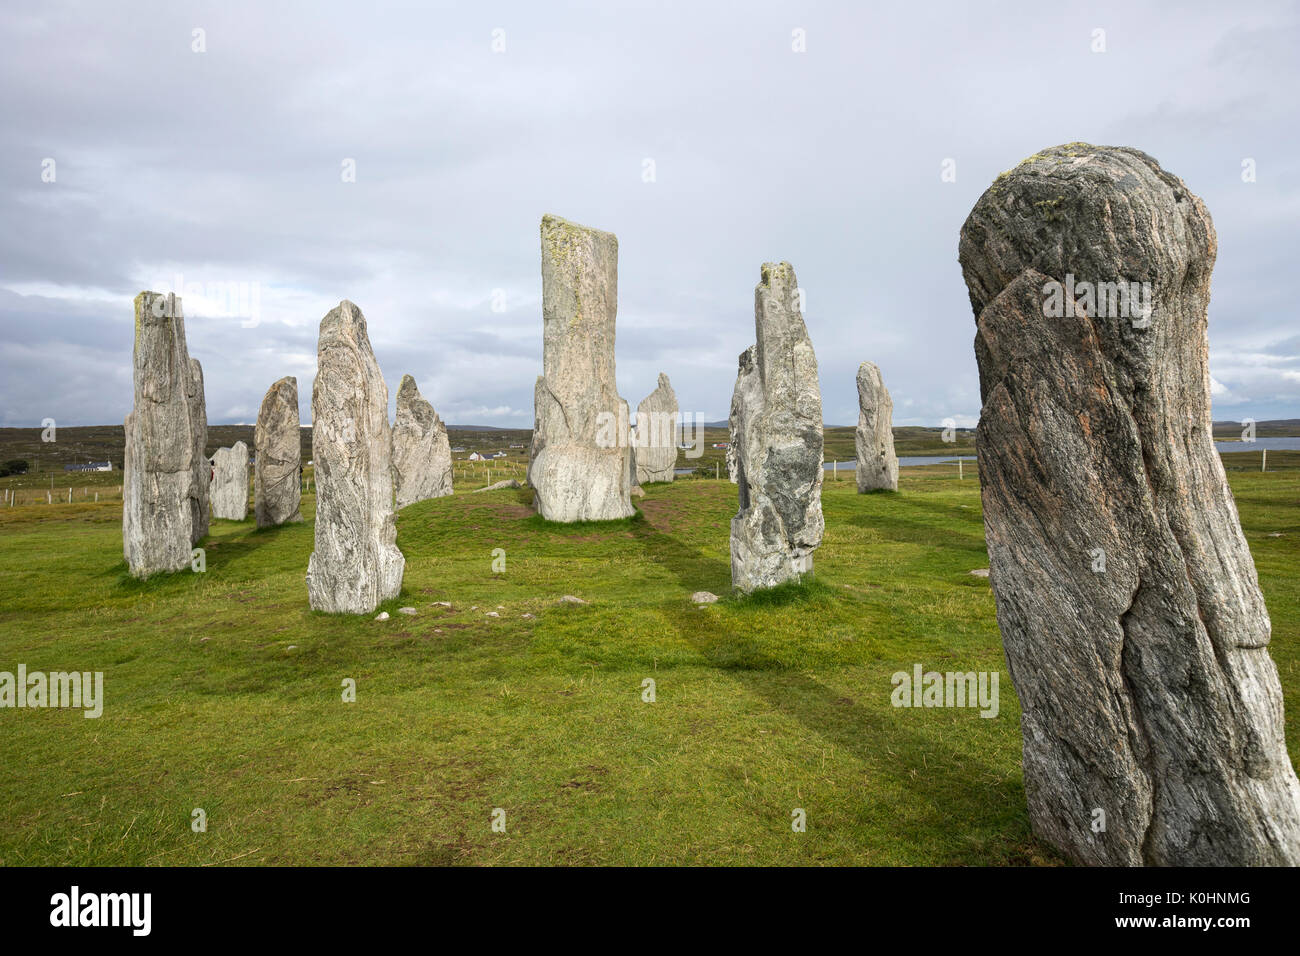 Pierre stratifiée, Callanish Standing Stones, pierres placées dans un motif cruciforme avec un cercle central en pierre, Callanish, Ecosse, Royaume-Uni Banque D'Images